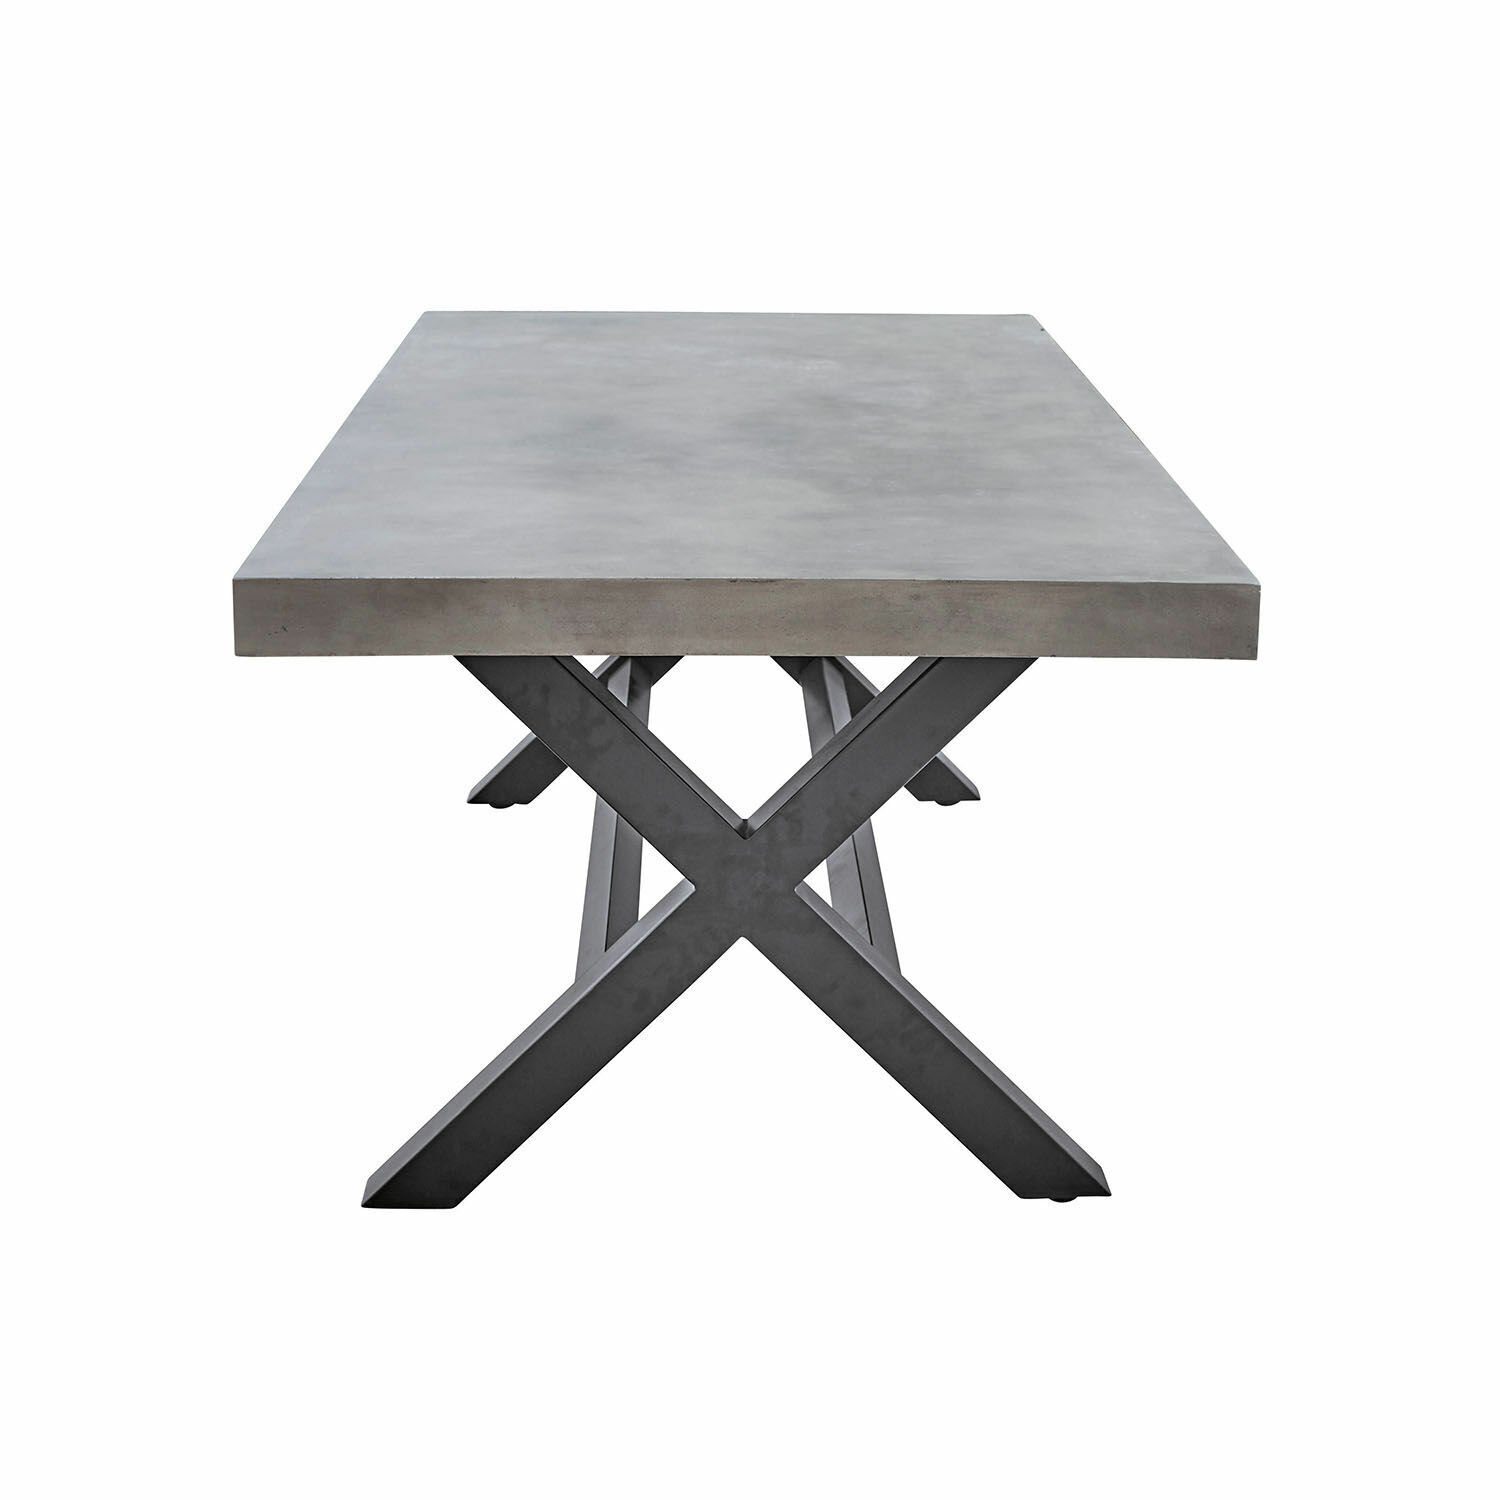 Whigham Mirabeau Tisch Gartentisch grau/schwarz